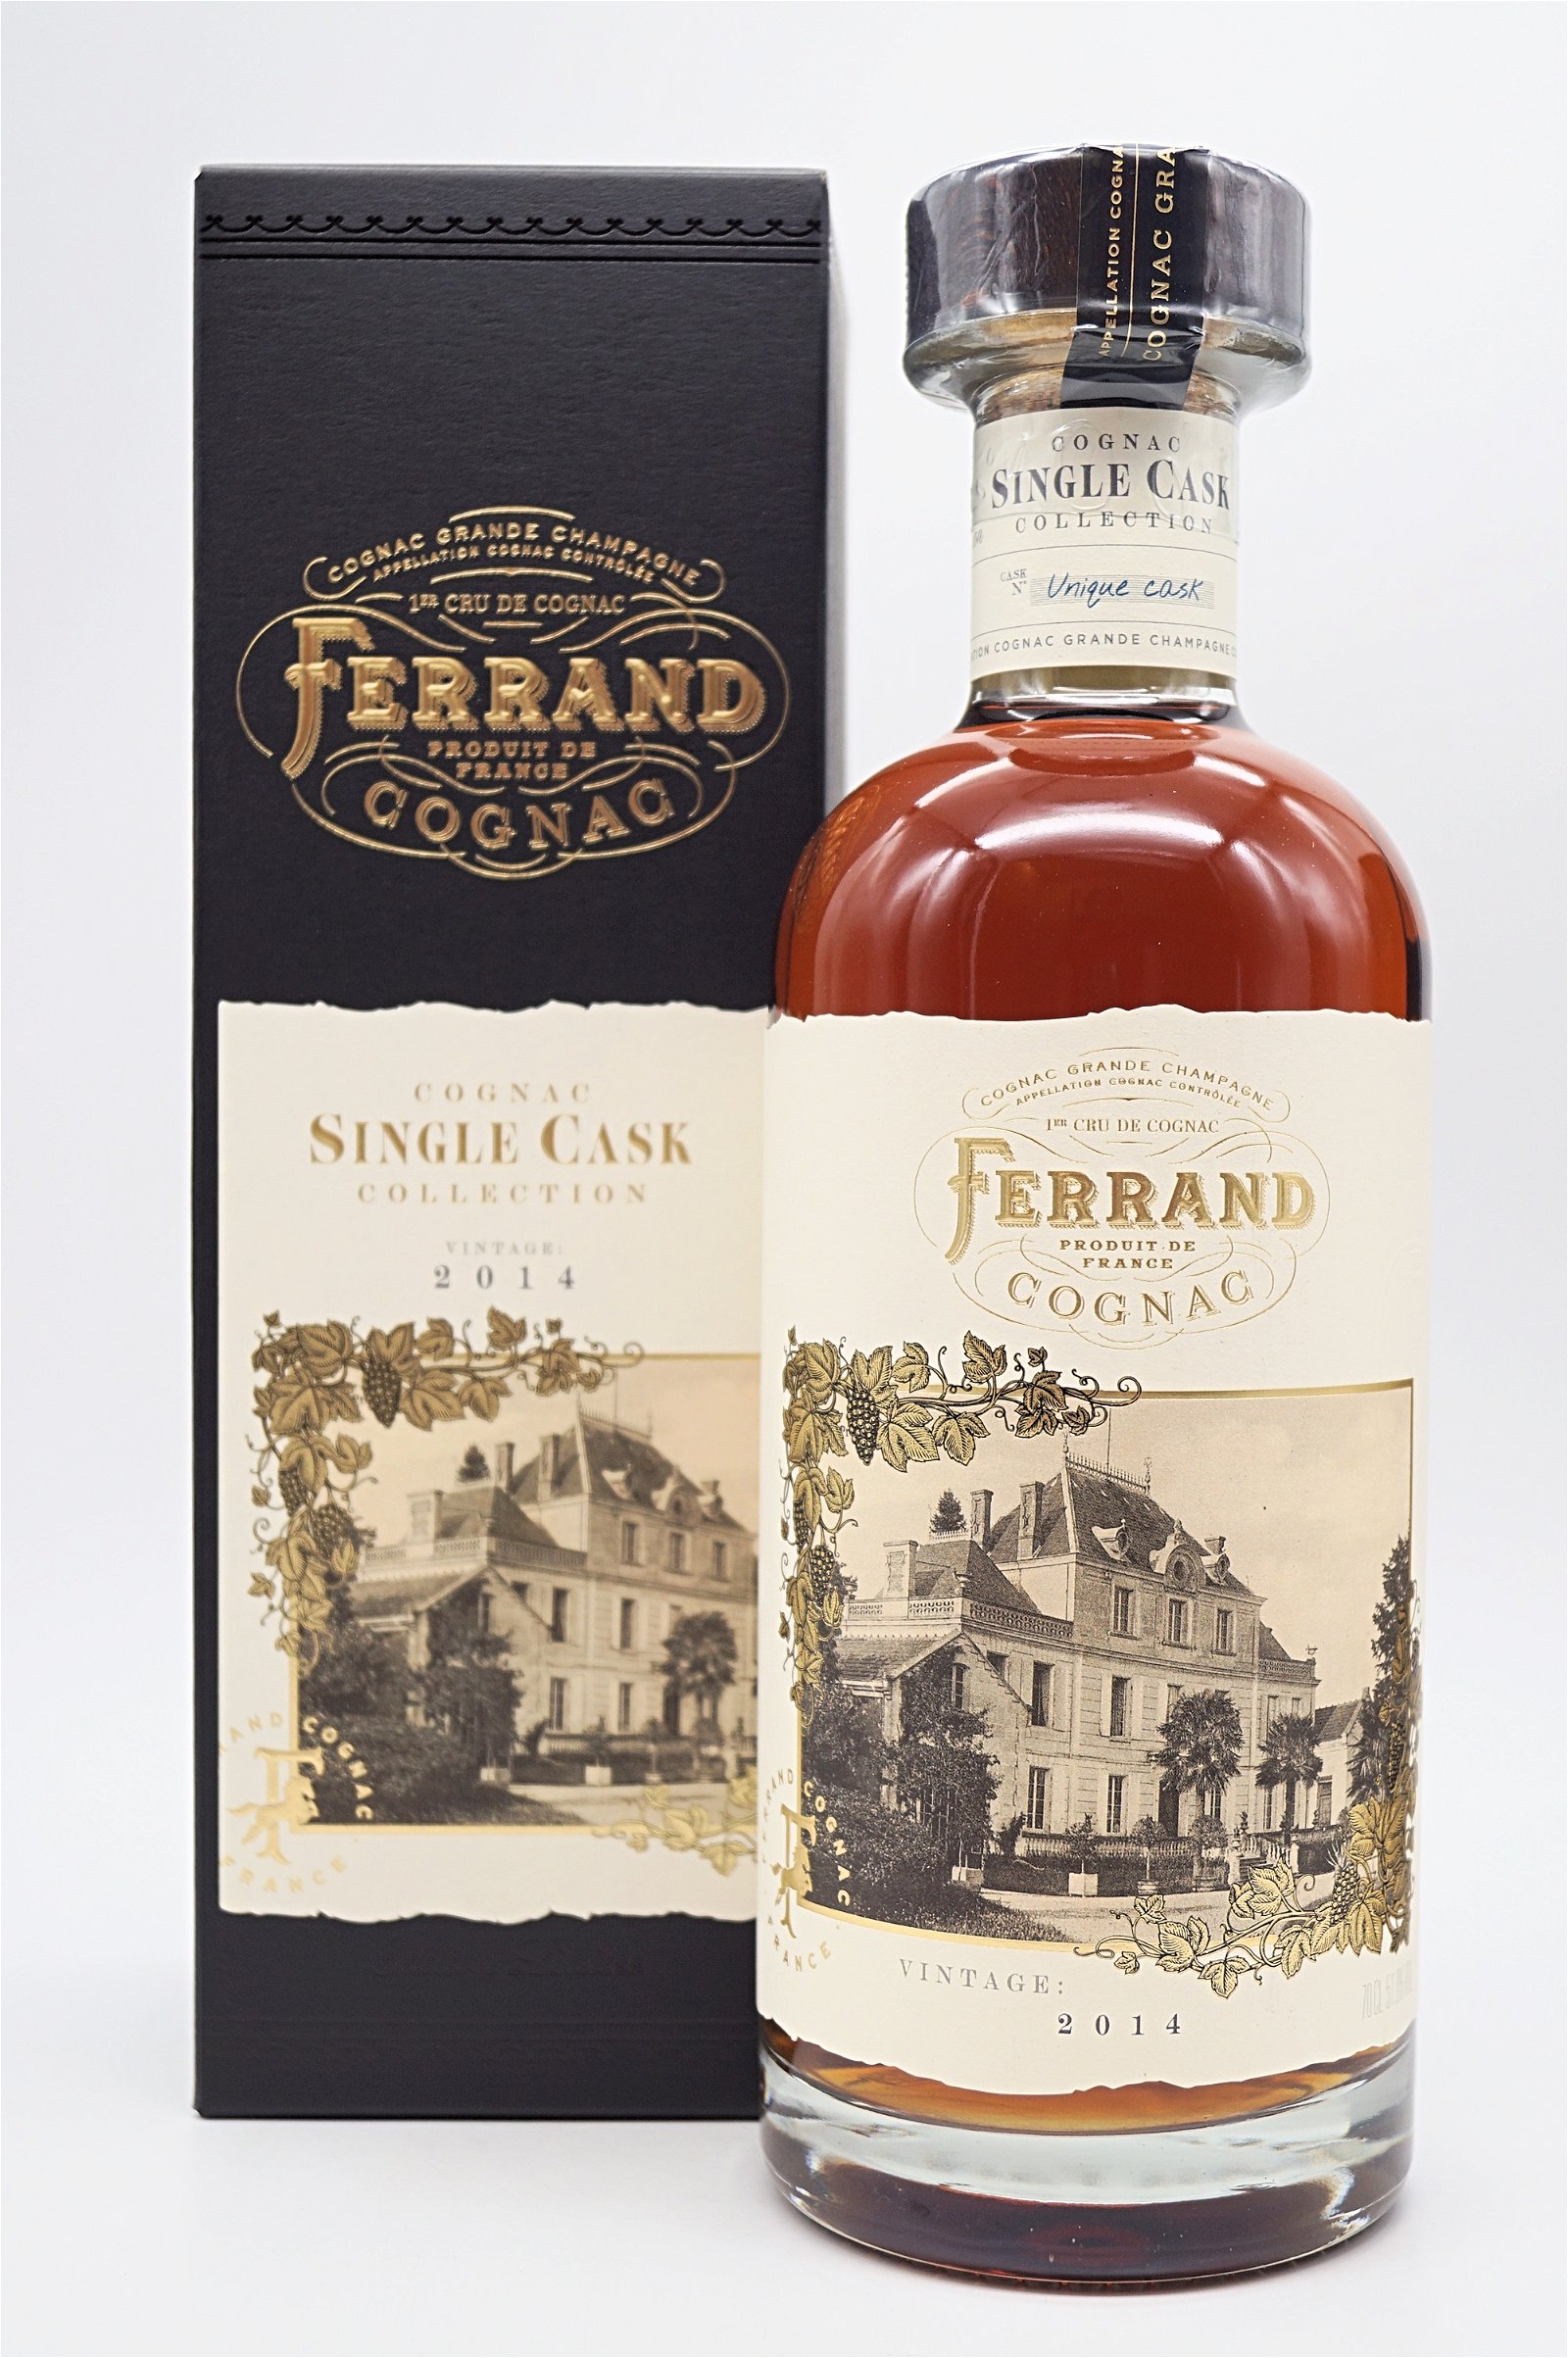 Pierre Ferrand Single Cask Collection Vintage 2014 Cognac